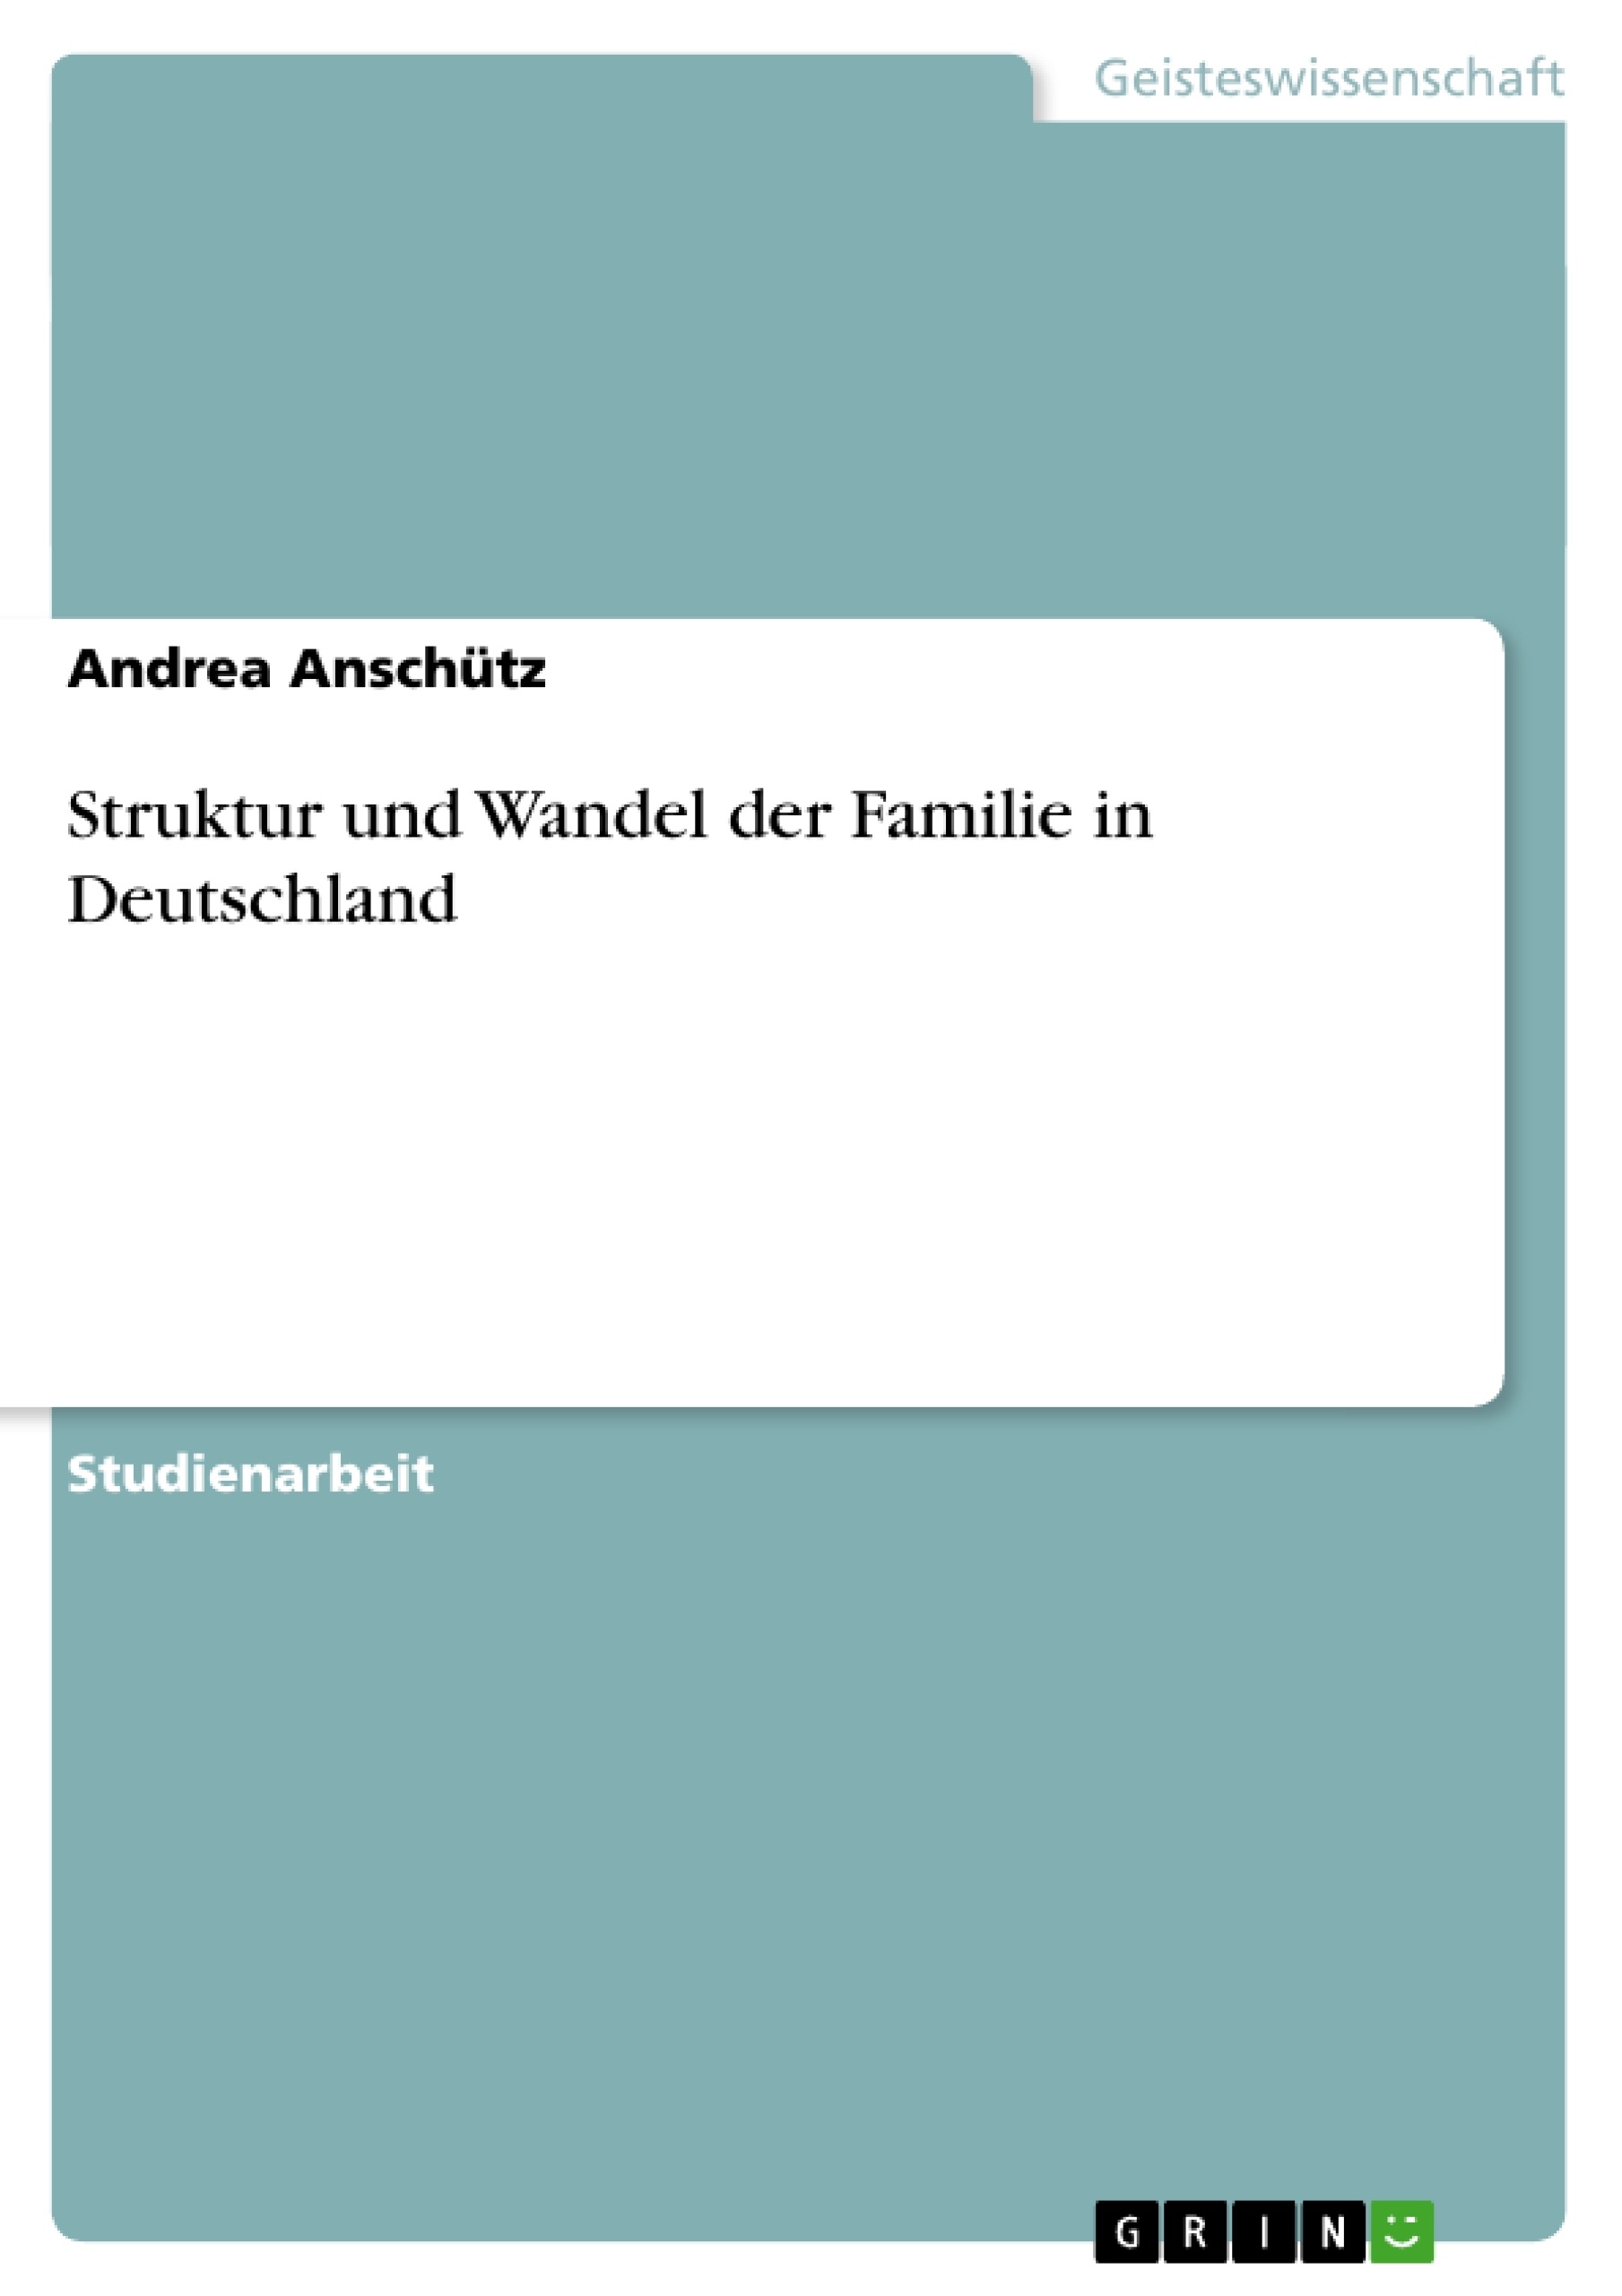 Título: Struktur und Wandel der Familie in Deutschland